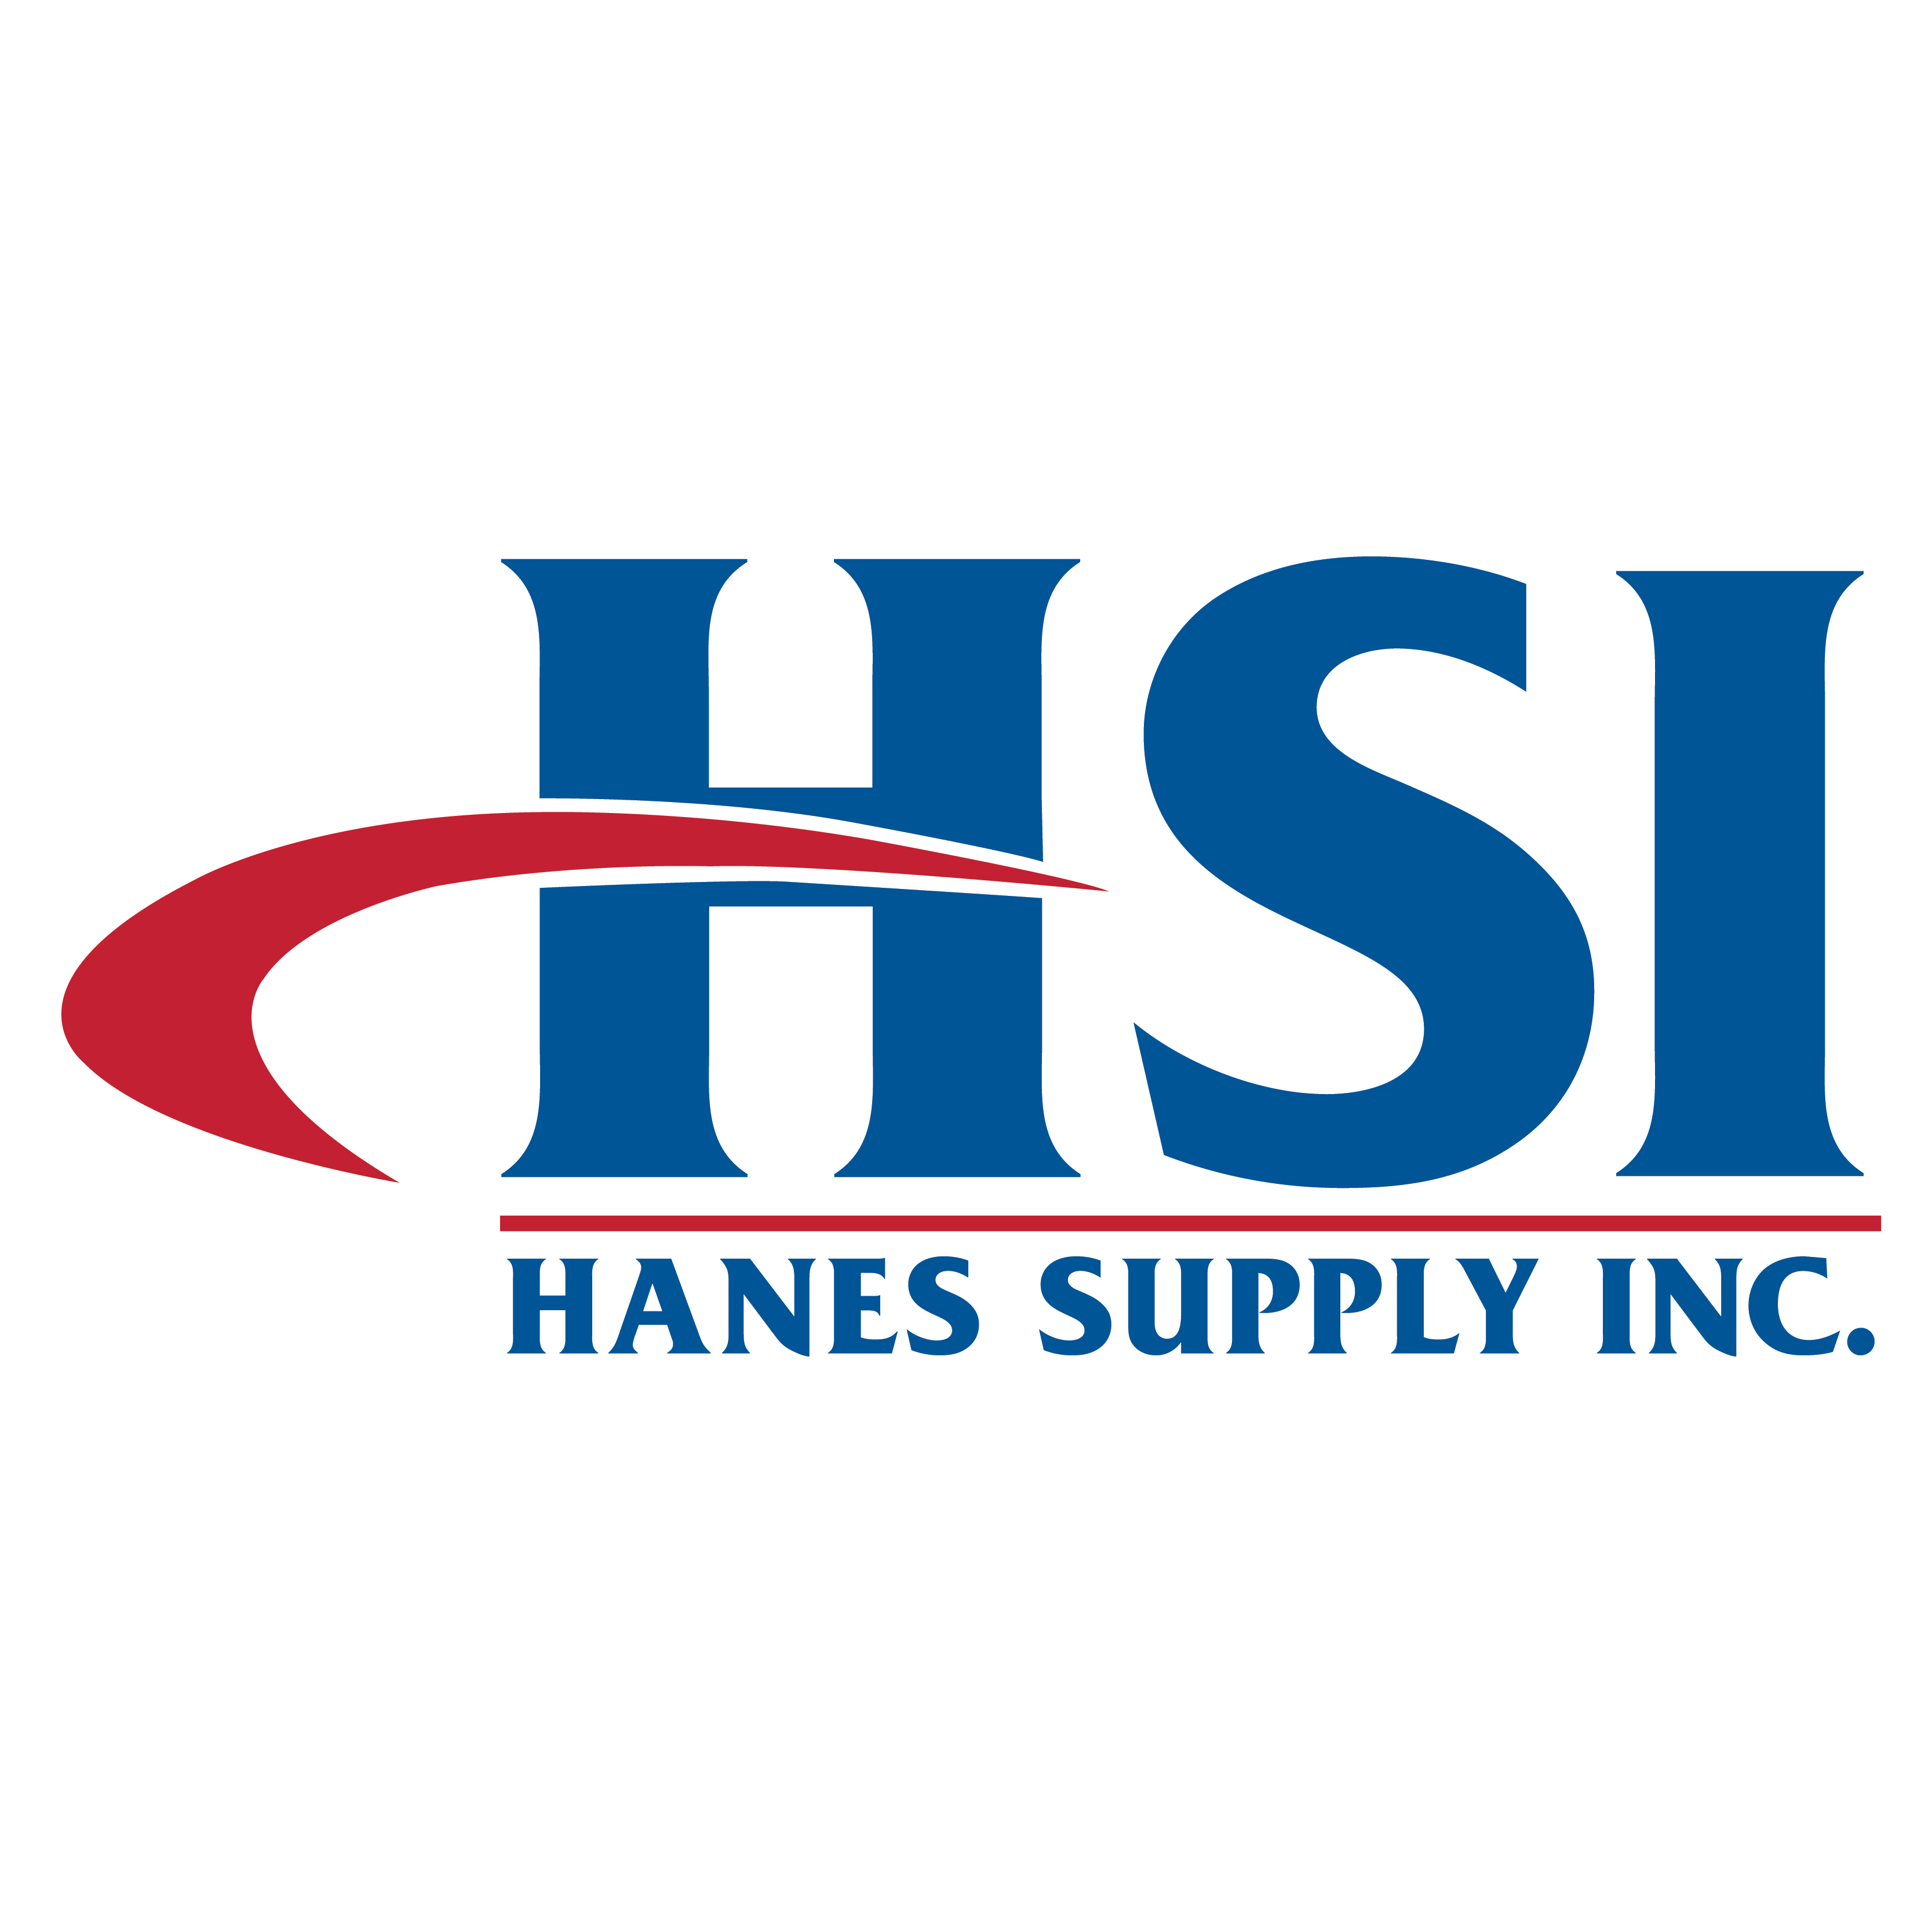 Hanes Supply Rigger's Handbook